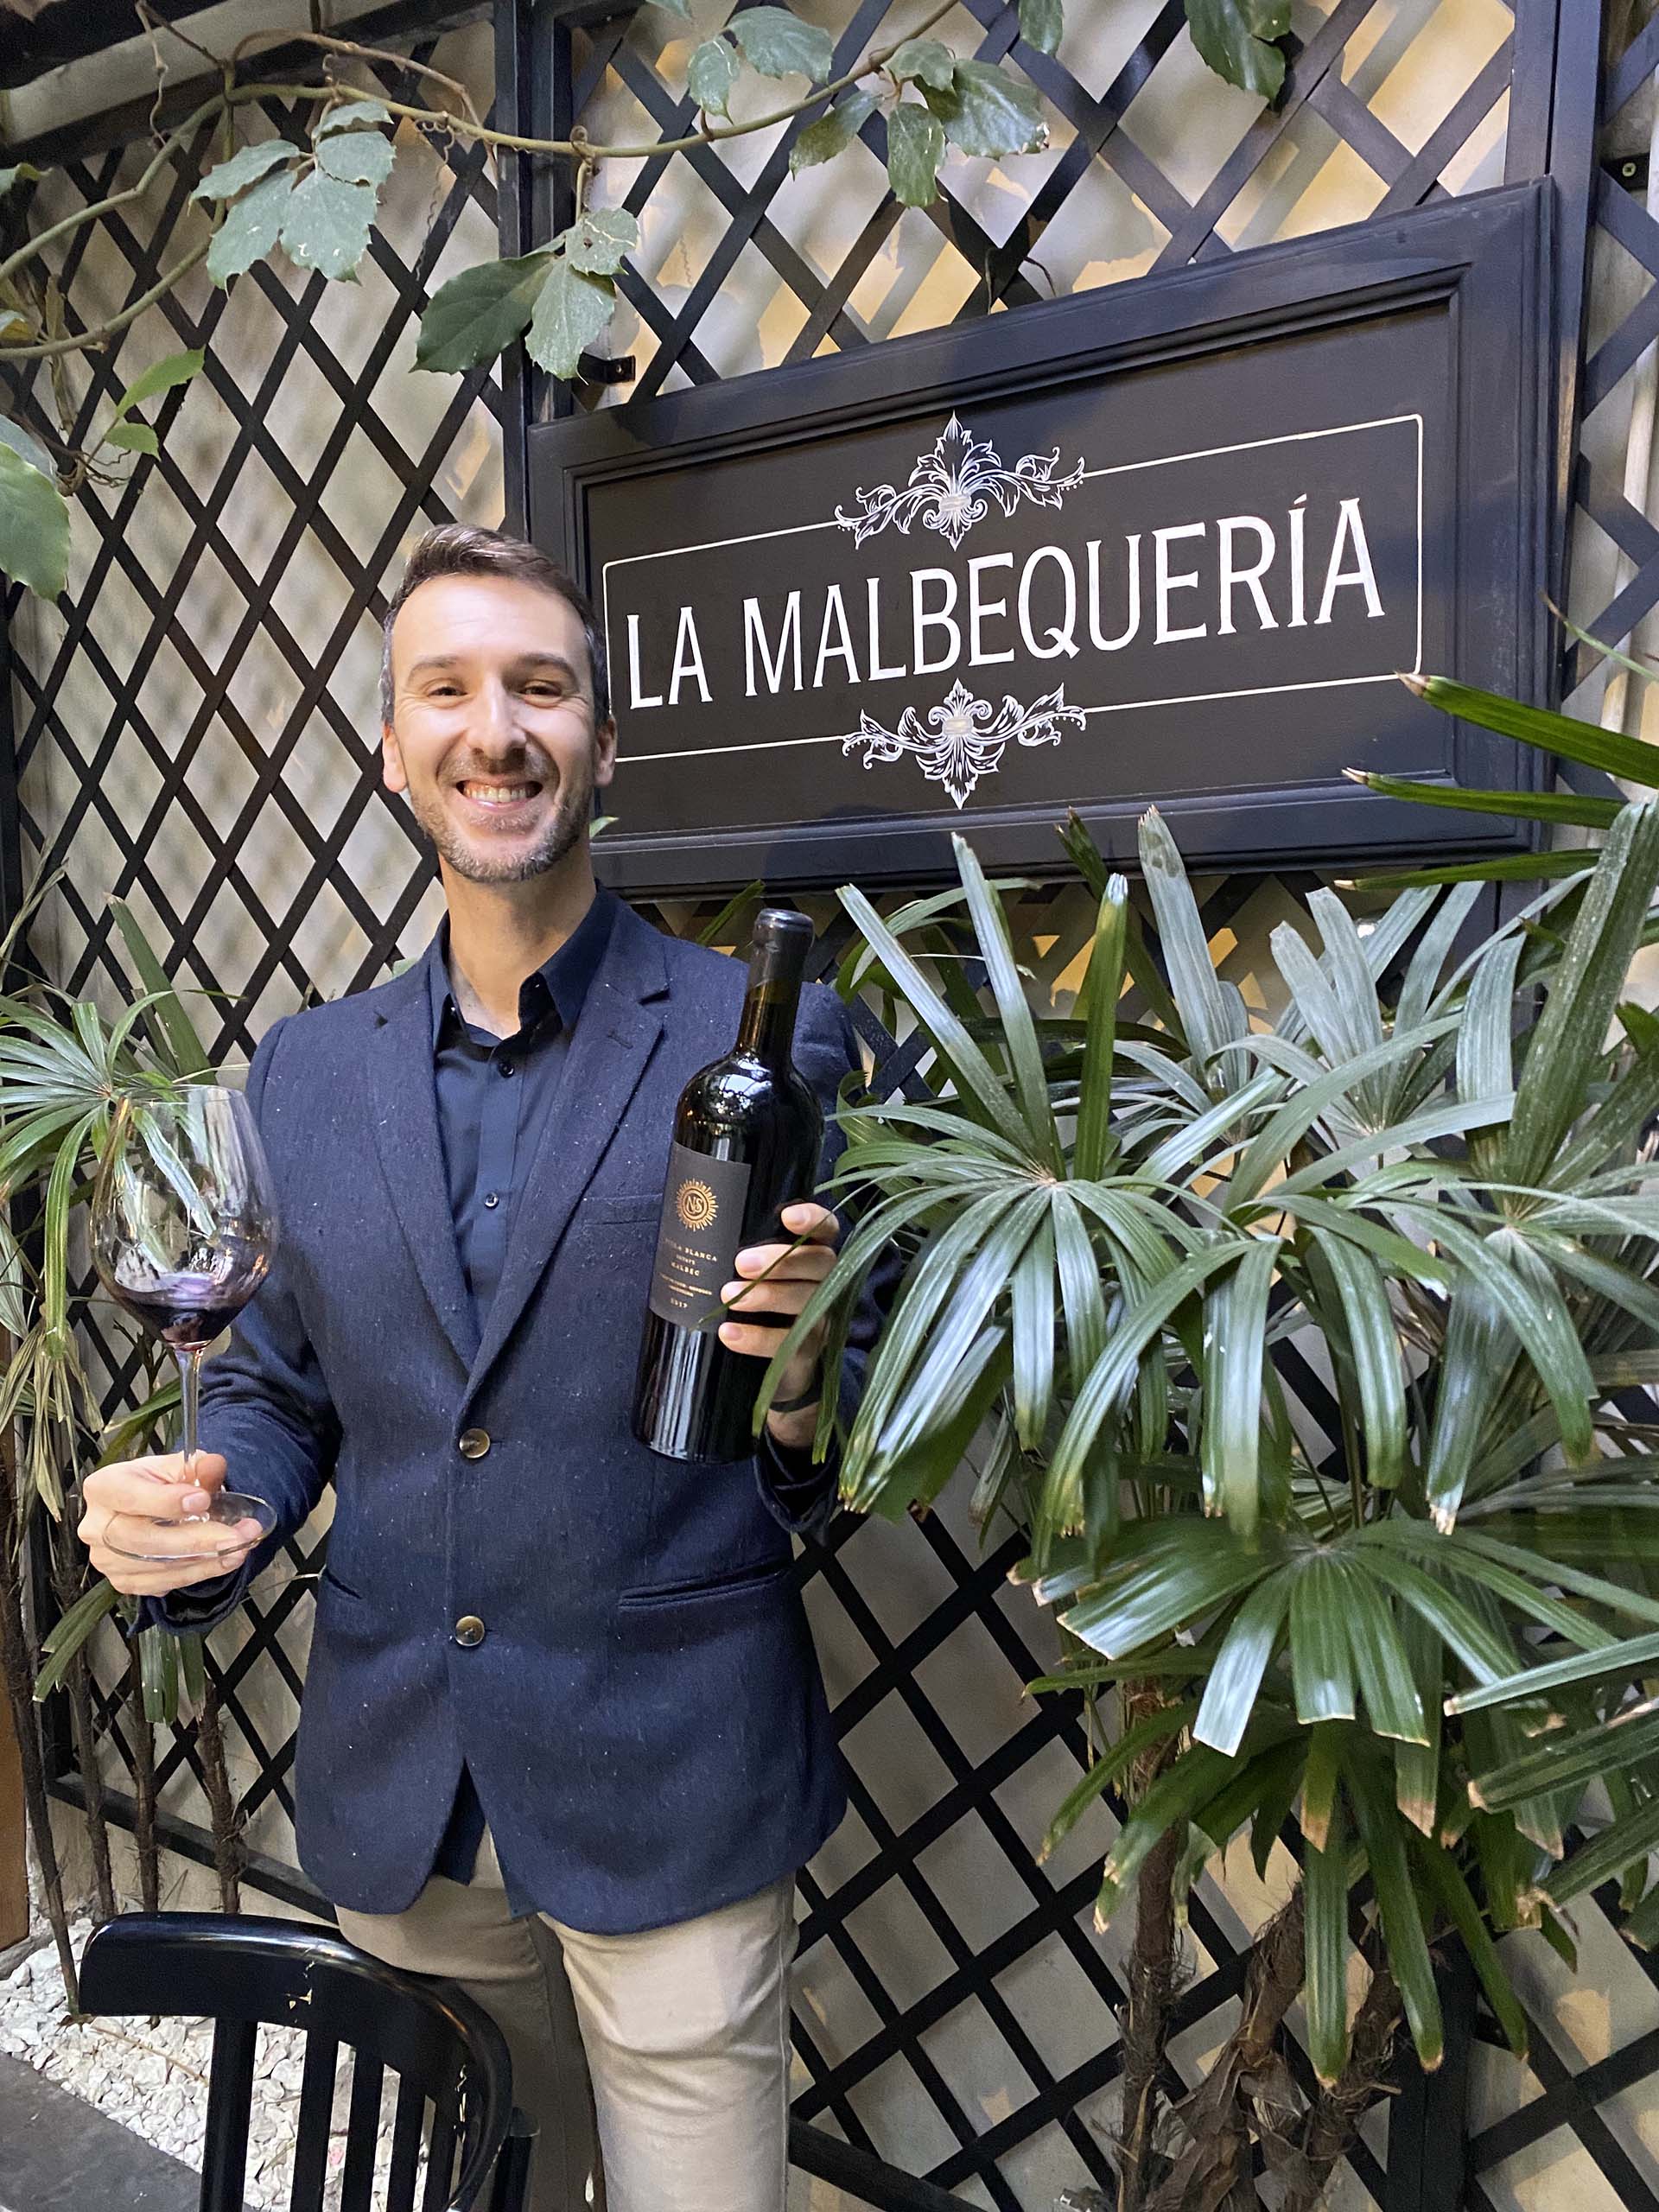 El Malbec argentino experimenta una nueva topografía de sabores, aromas y frescuras variables, que se traducen en una gama inagotable de perfiles y estilos